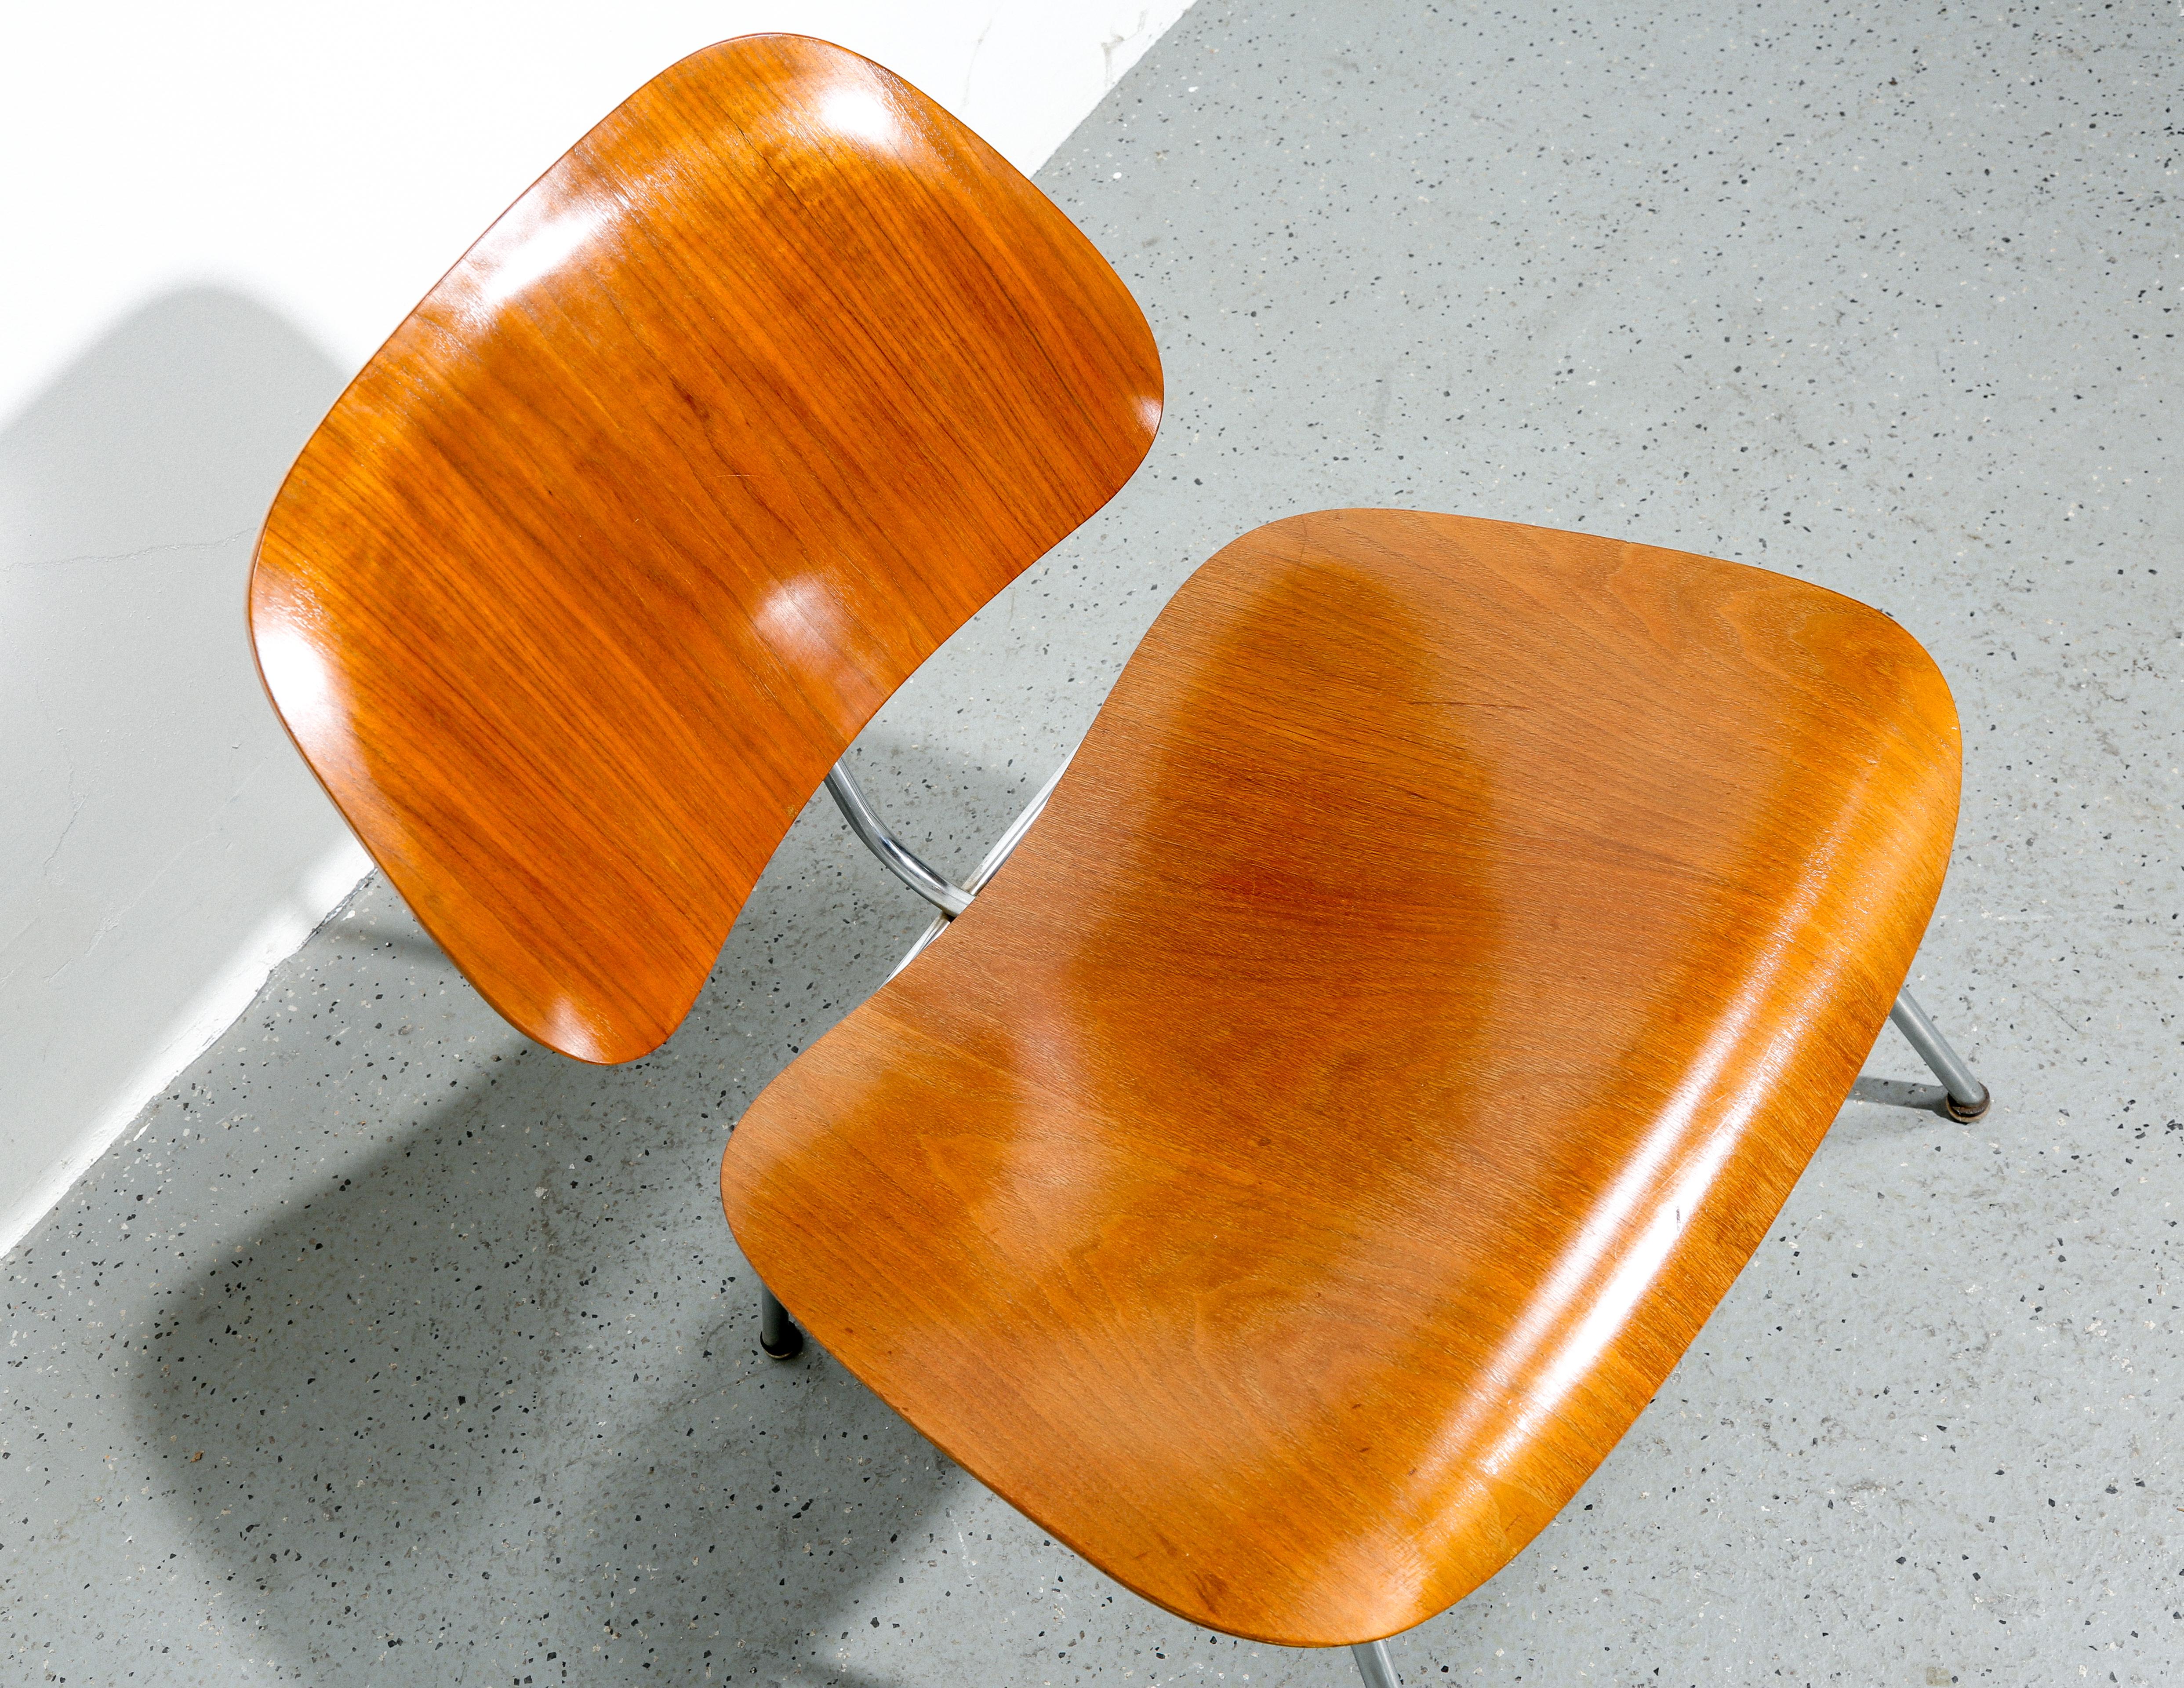 Der Eames LCM (Lounge Chair Metal) ist ein berühmtes Beispiel für das moderne Design der Mitte des Jahrhunderts von Charles und Ray Eames. Der 1945 erstmals vorgestellte Stuhl verkörpert Schlichtheit, Funktionalität und Komfort.

Der aus